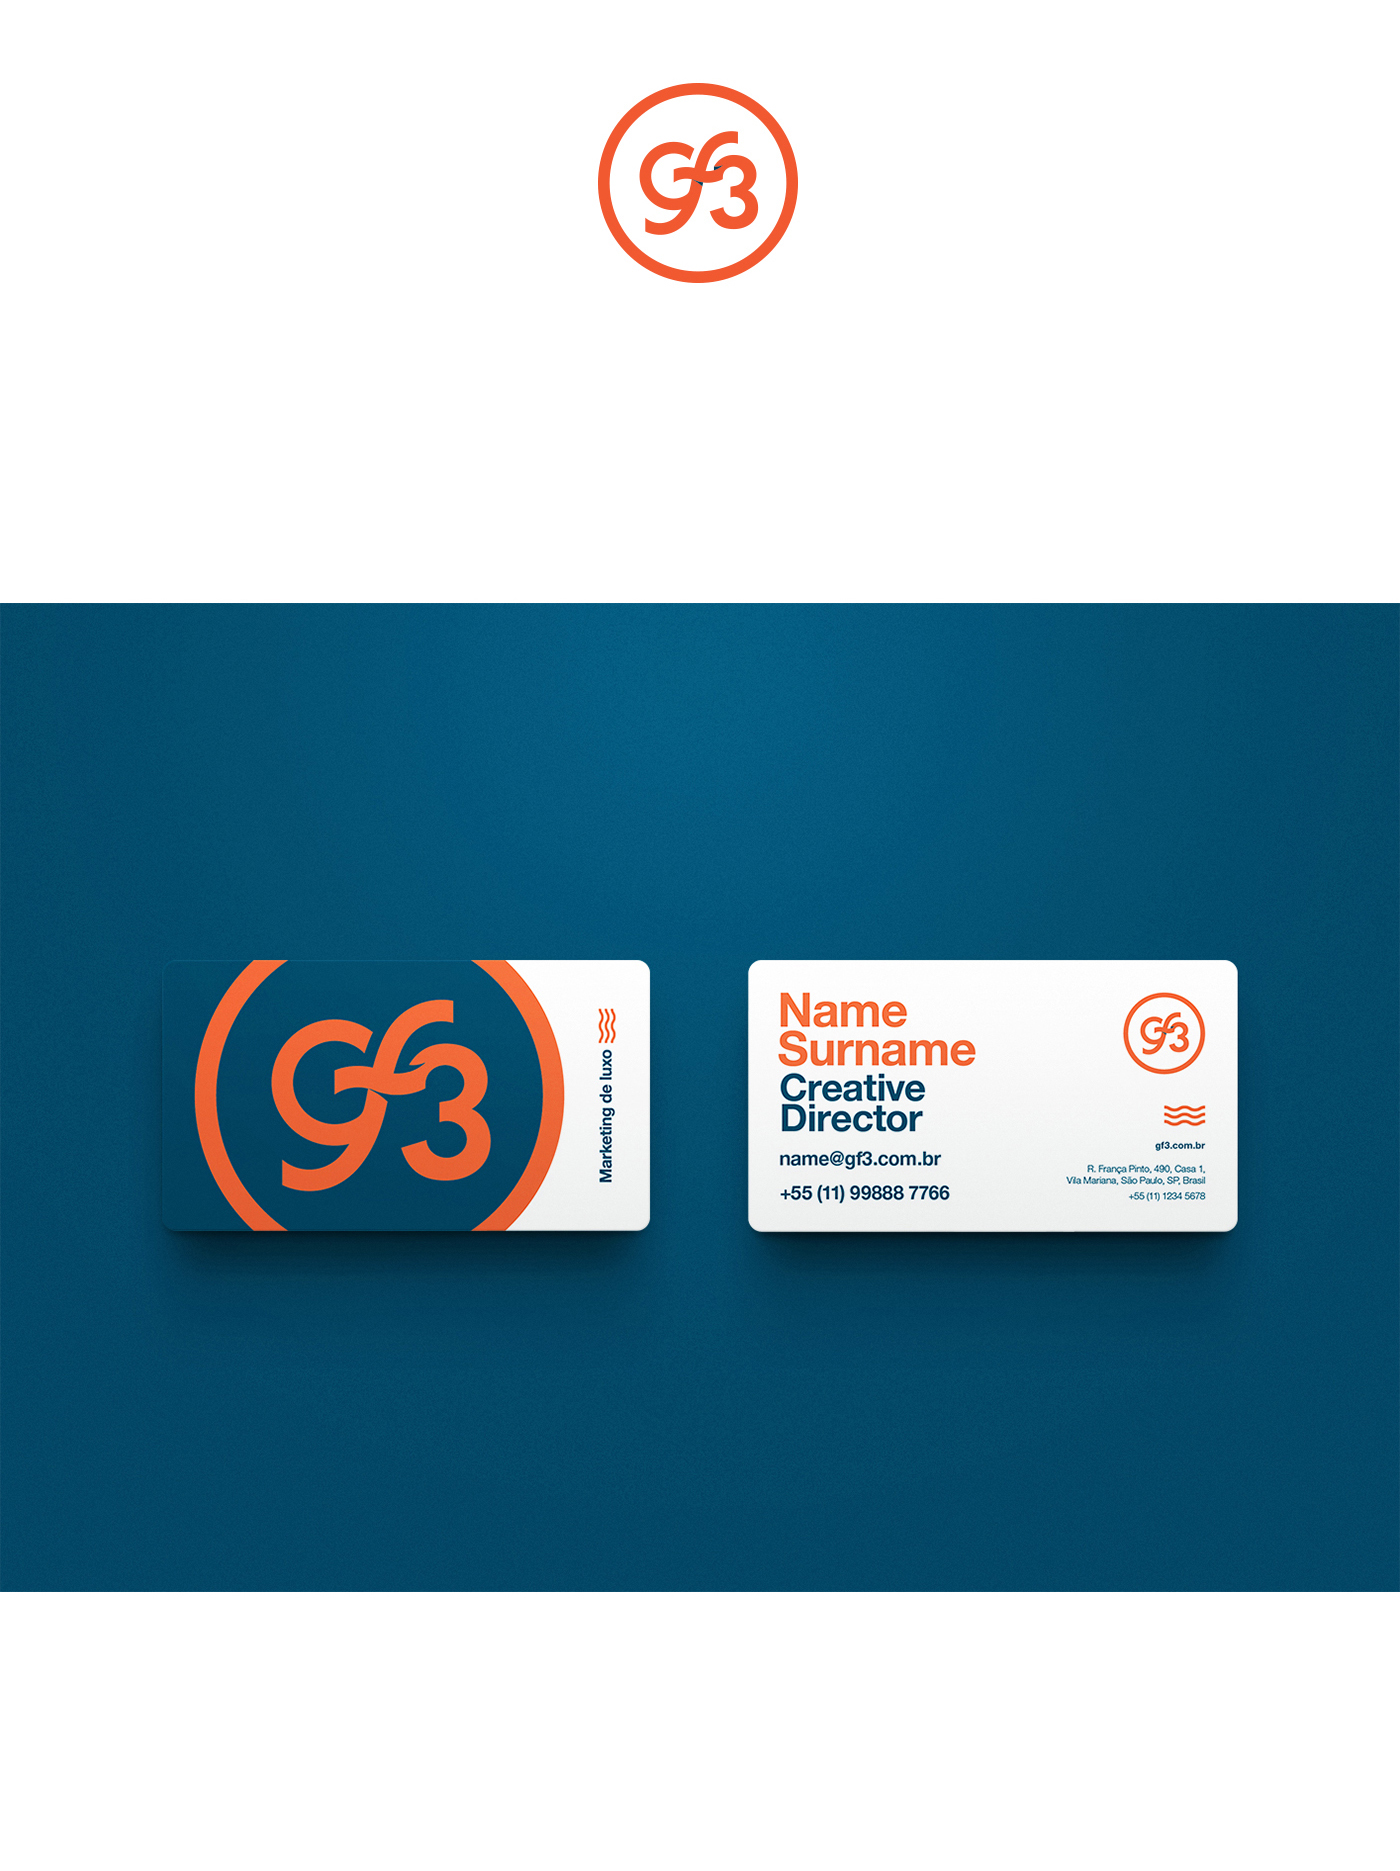 Business Cards Cartão de Visita cartões de visita marca logo identity